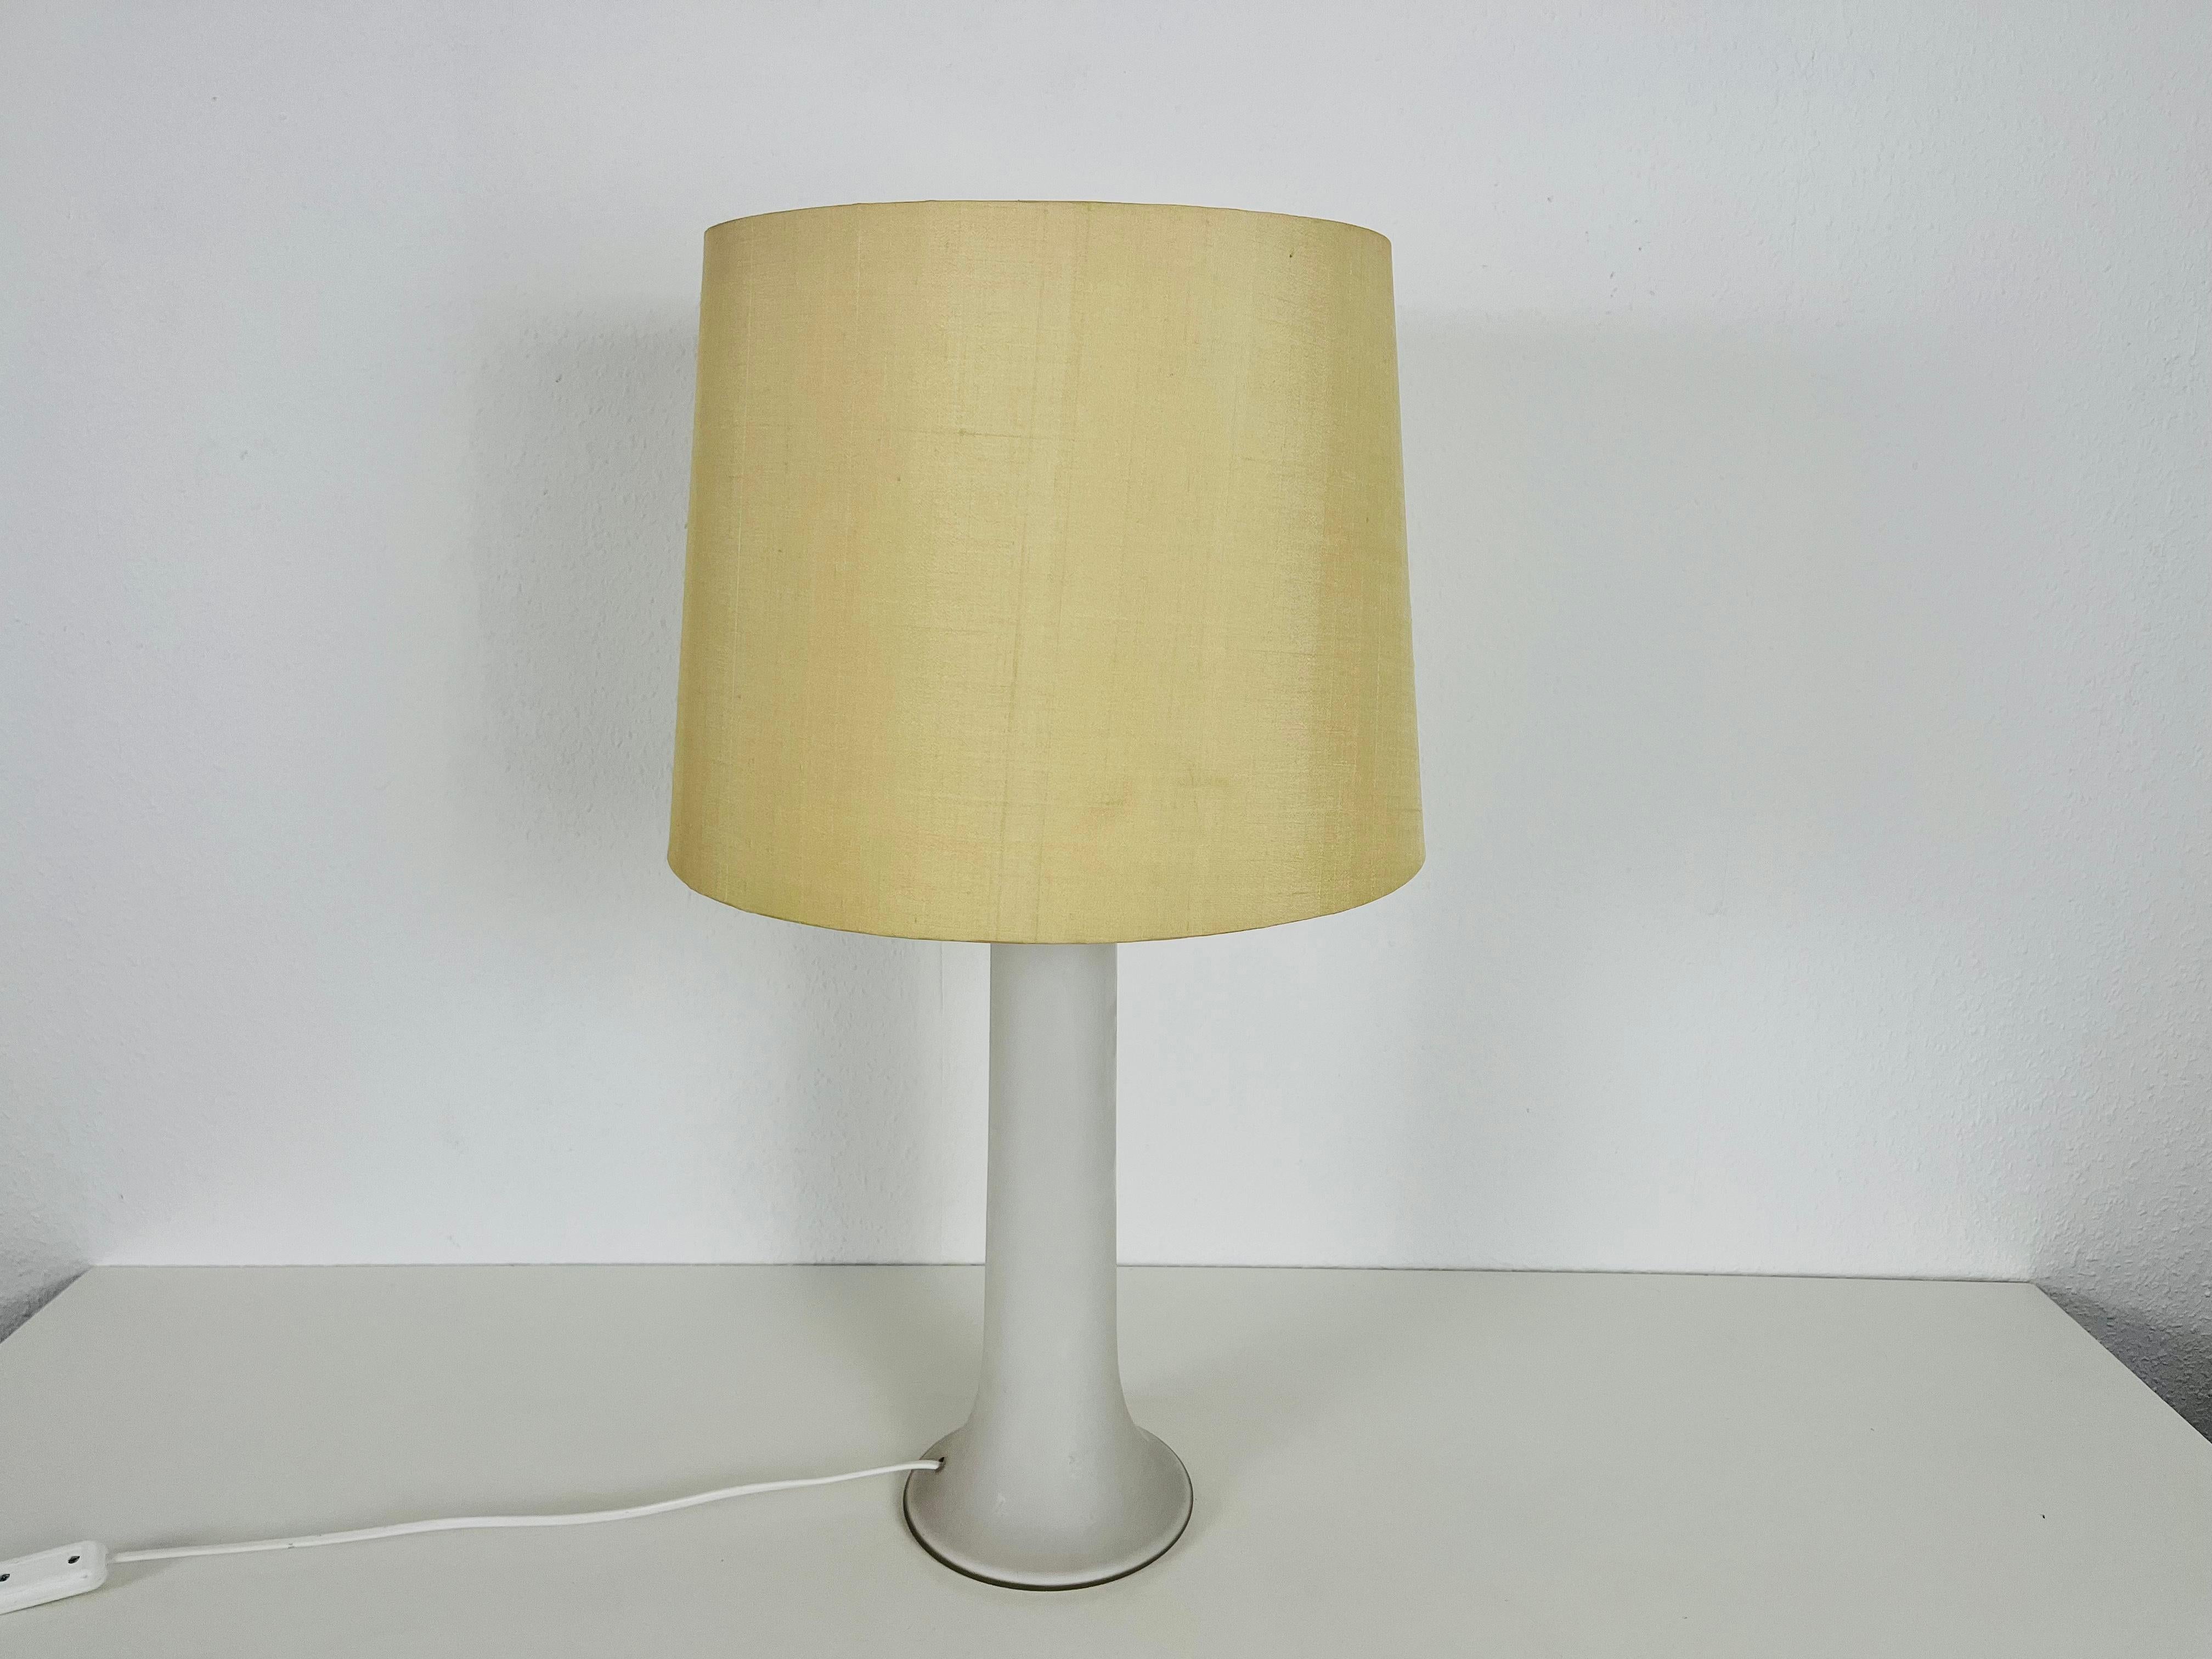 Une belle grande lampe de table fabriquée dans les années 1960 par Luxus Sweden. La base est en verre blanc. L'abat-jour est en tissu et a une couleur beige.

Le luminaire nécessite une ampoule E27. Fonctionne avec les deux 120/220 V. Bon état